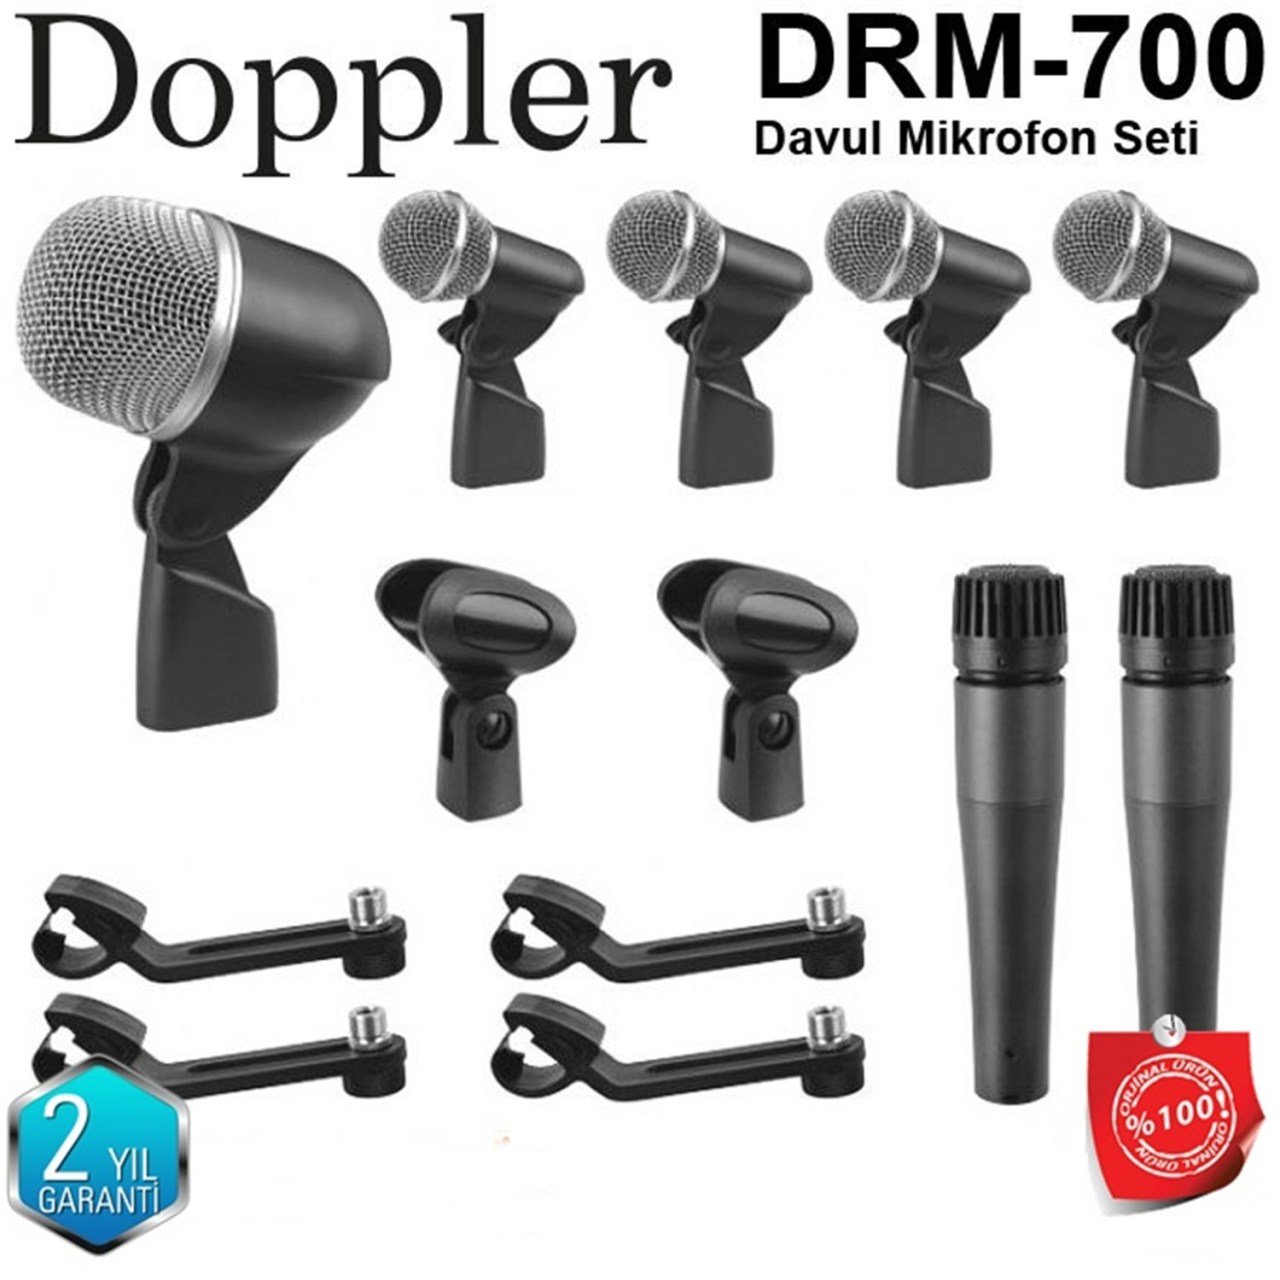 DOPPLER DRM-700